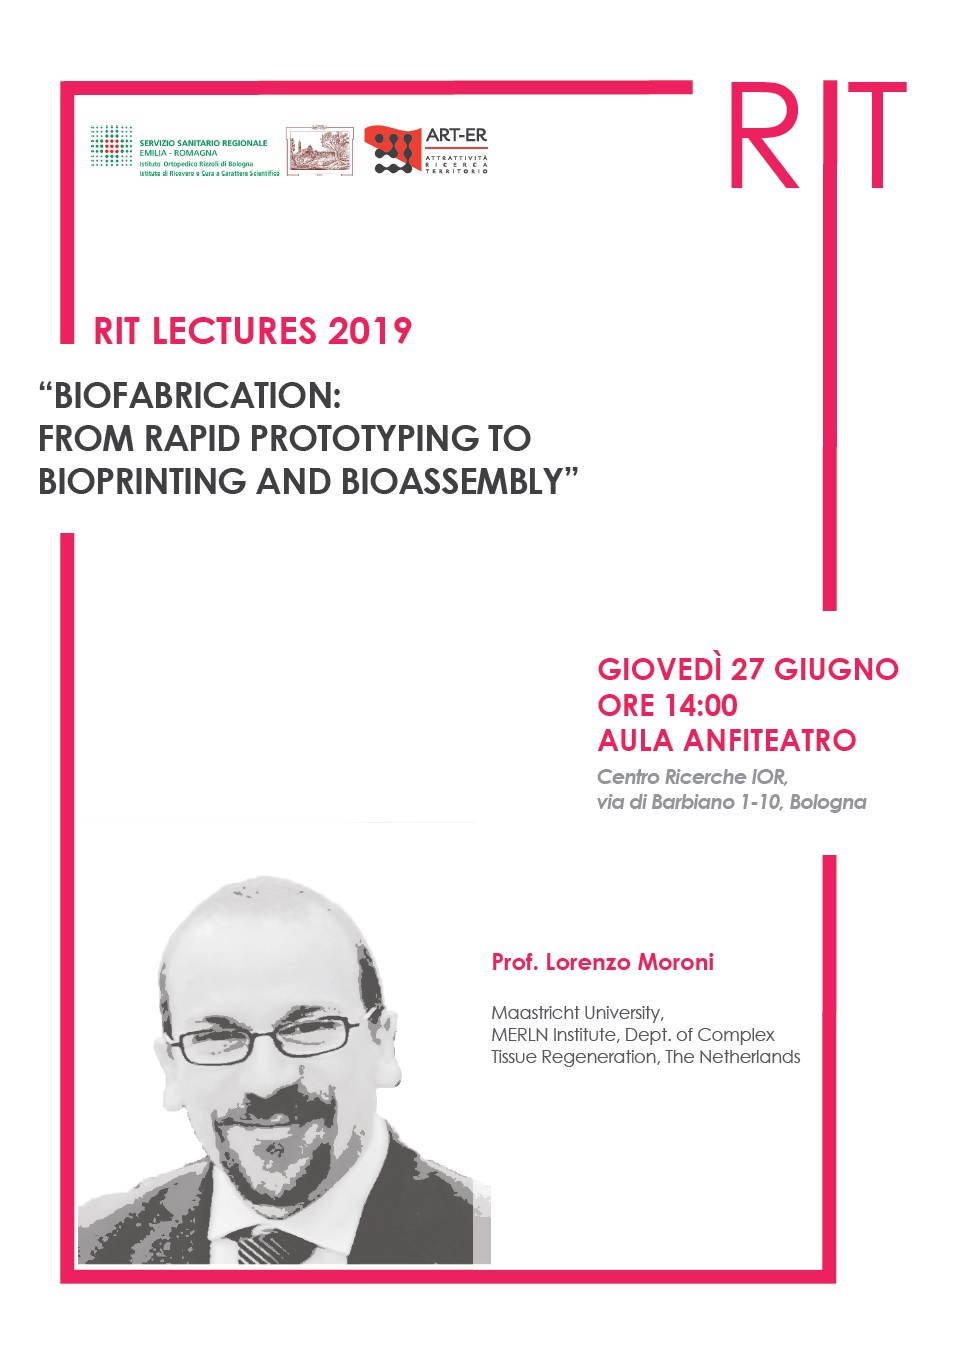 Locandina della RIT Lectures 2019 - prof. Moroni